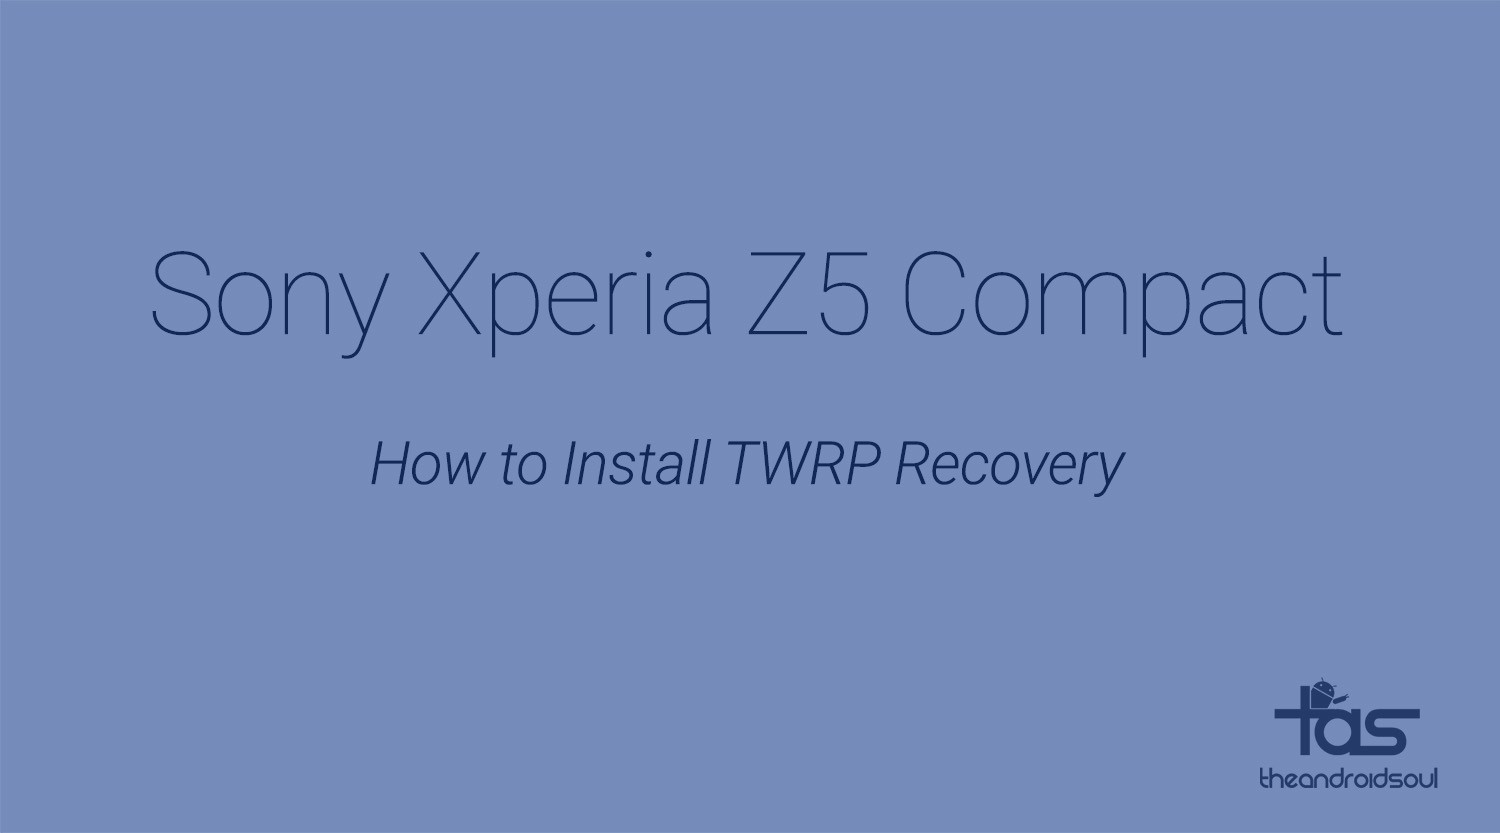 Sony Xperia Z5 Compact TWRP Recovery: descargas y guía de instalación